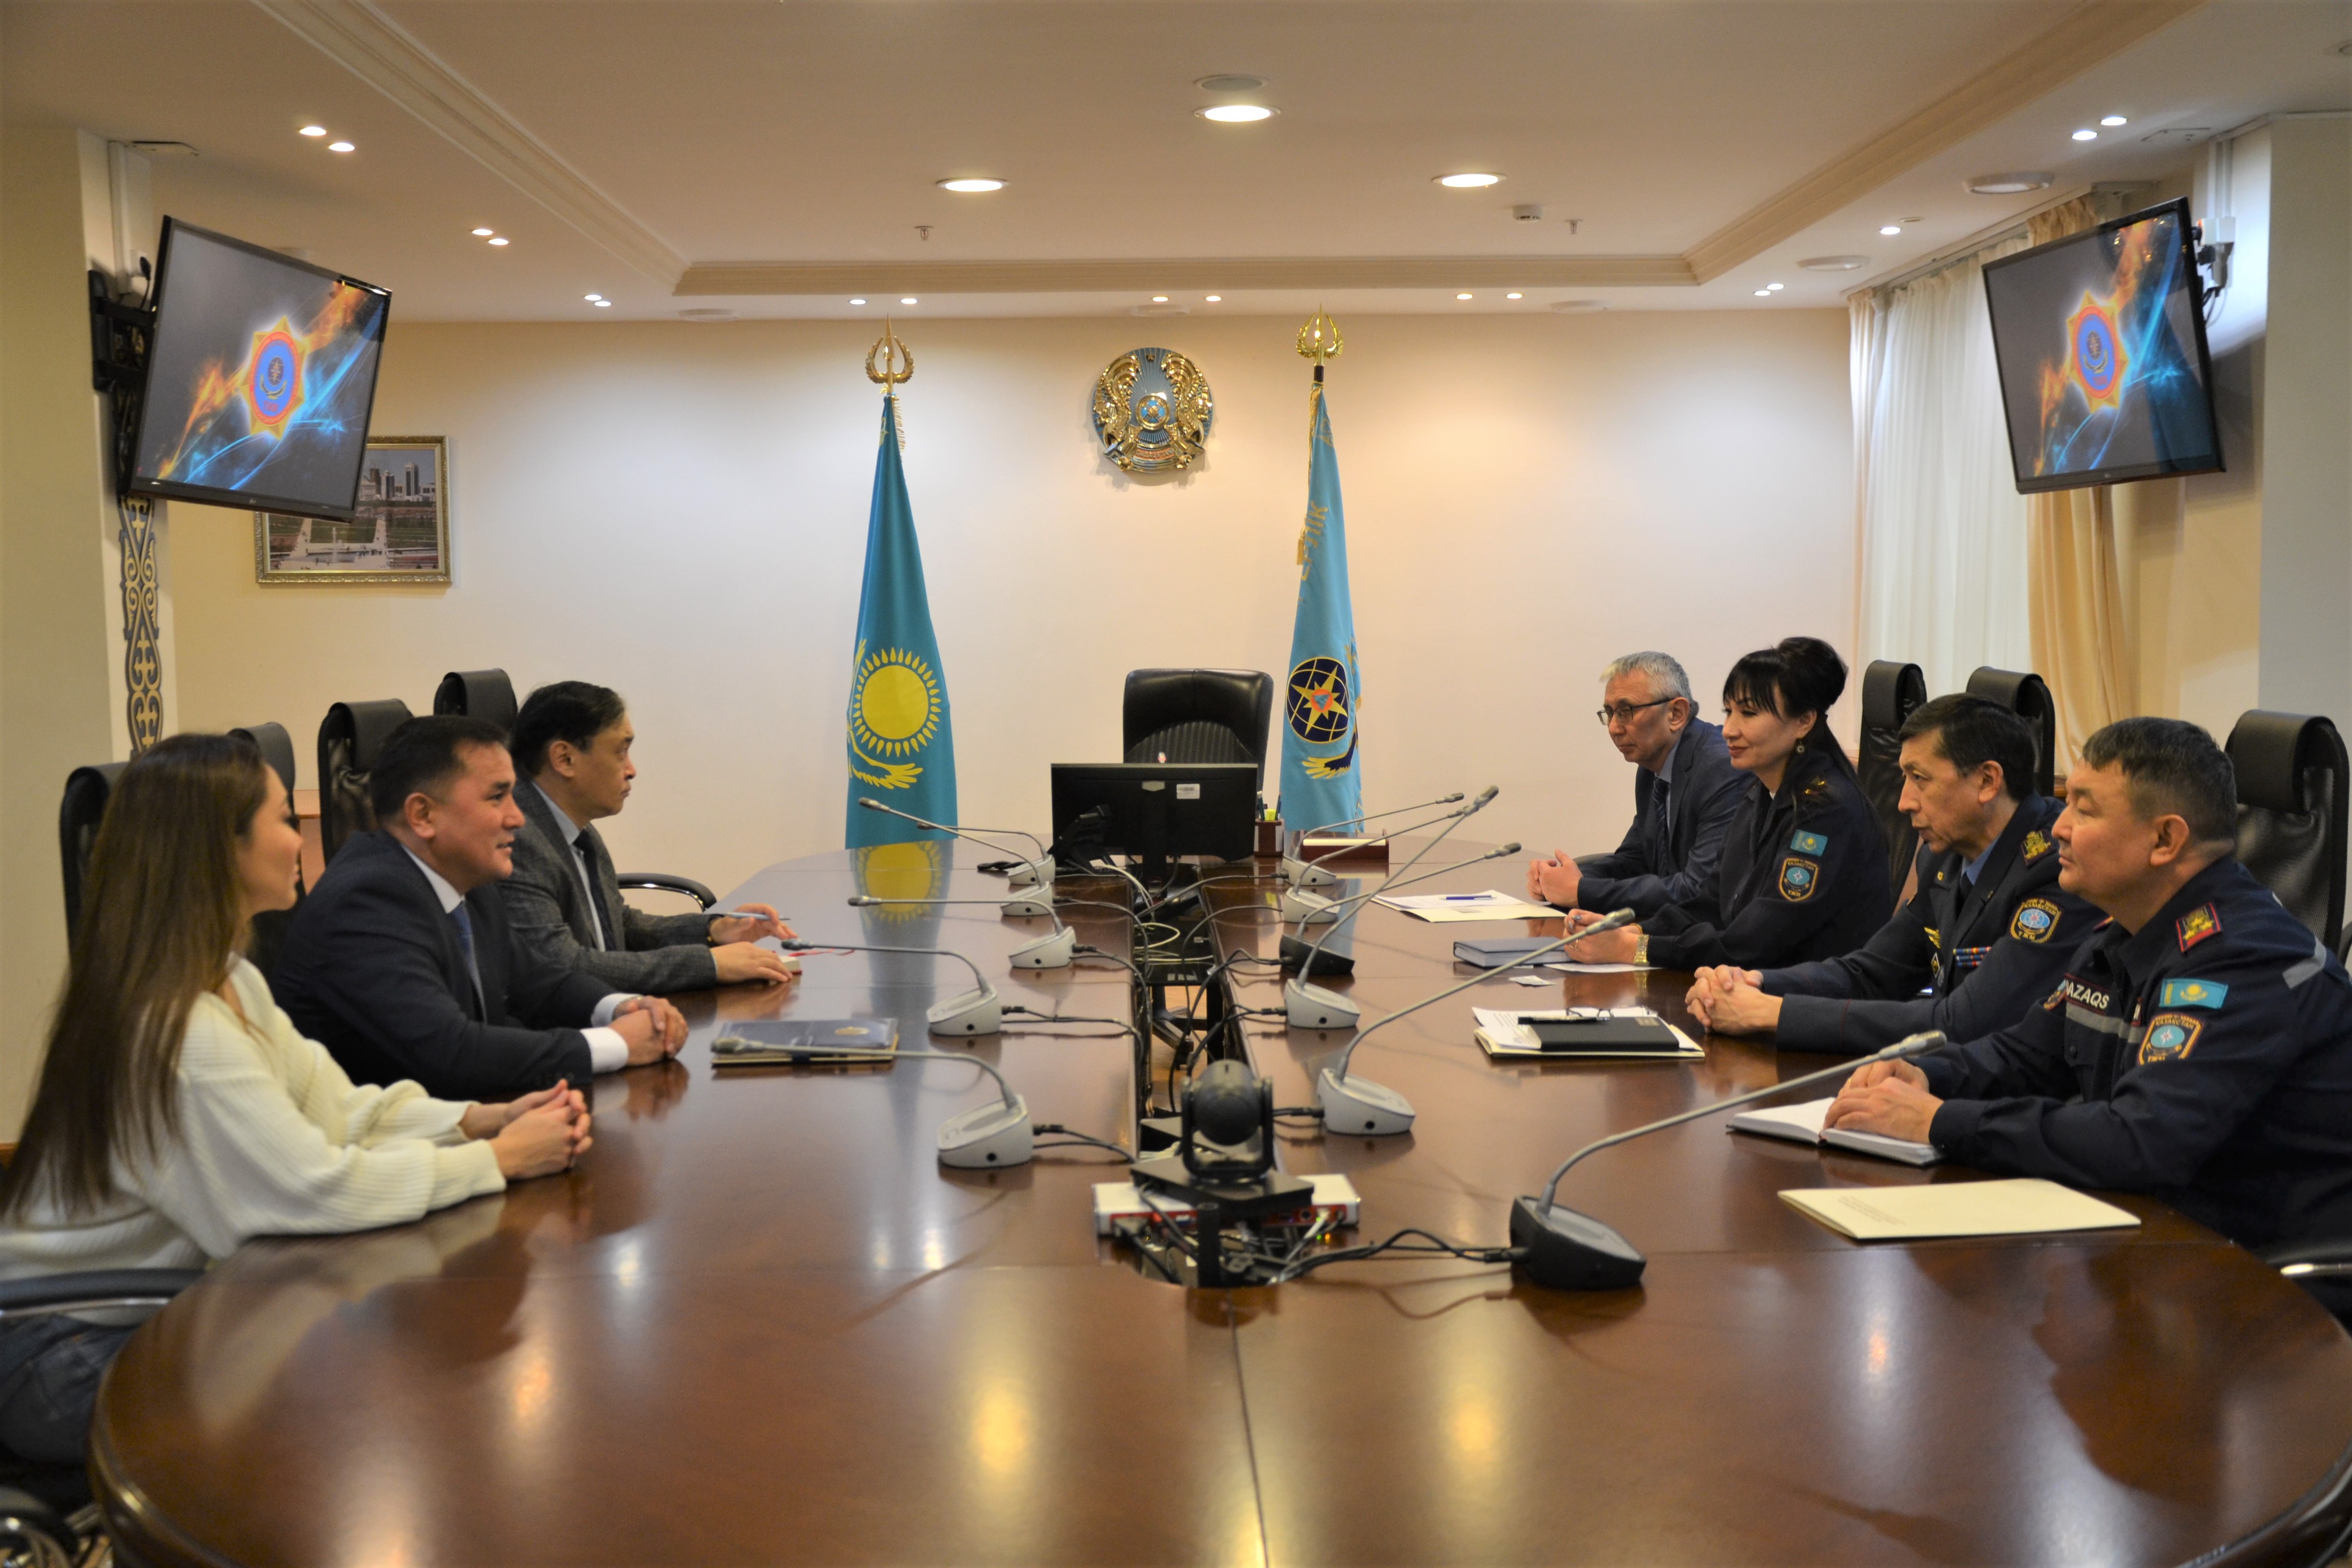 МЧС Казахстана и Первый антикоррупционный медиа центр объединят усилия по антикоррупционной профилактике